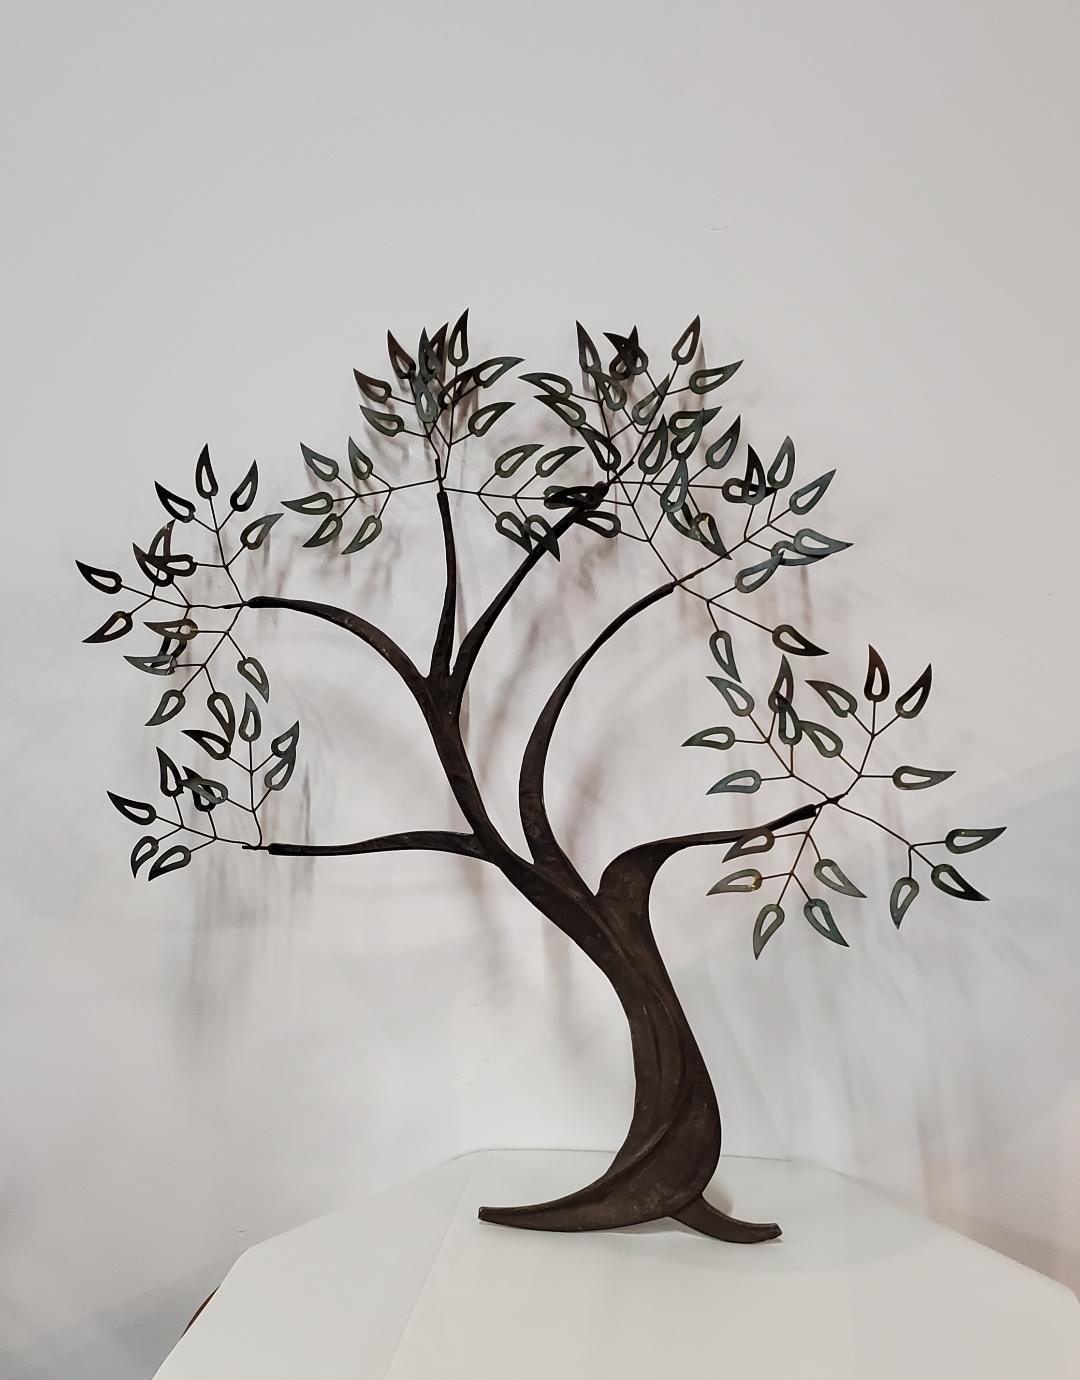 Art of Vintage, 1960, arbre de vie en métal torsadé, sculpture murale 

Arbre en métal torsadé avec des branches étendues et des feuilles en métal patiné.

Cette sculpture murale décorative de l'arbre de vie en métal se trouve à une distance de